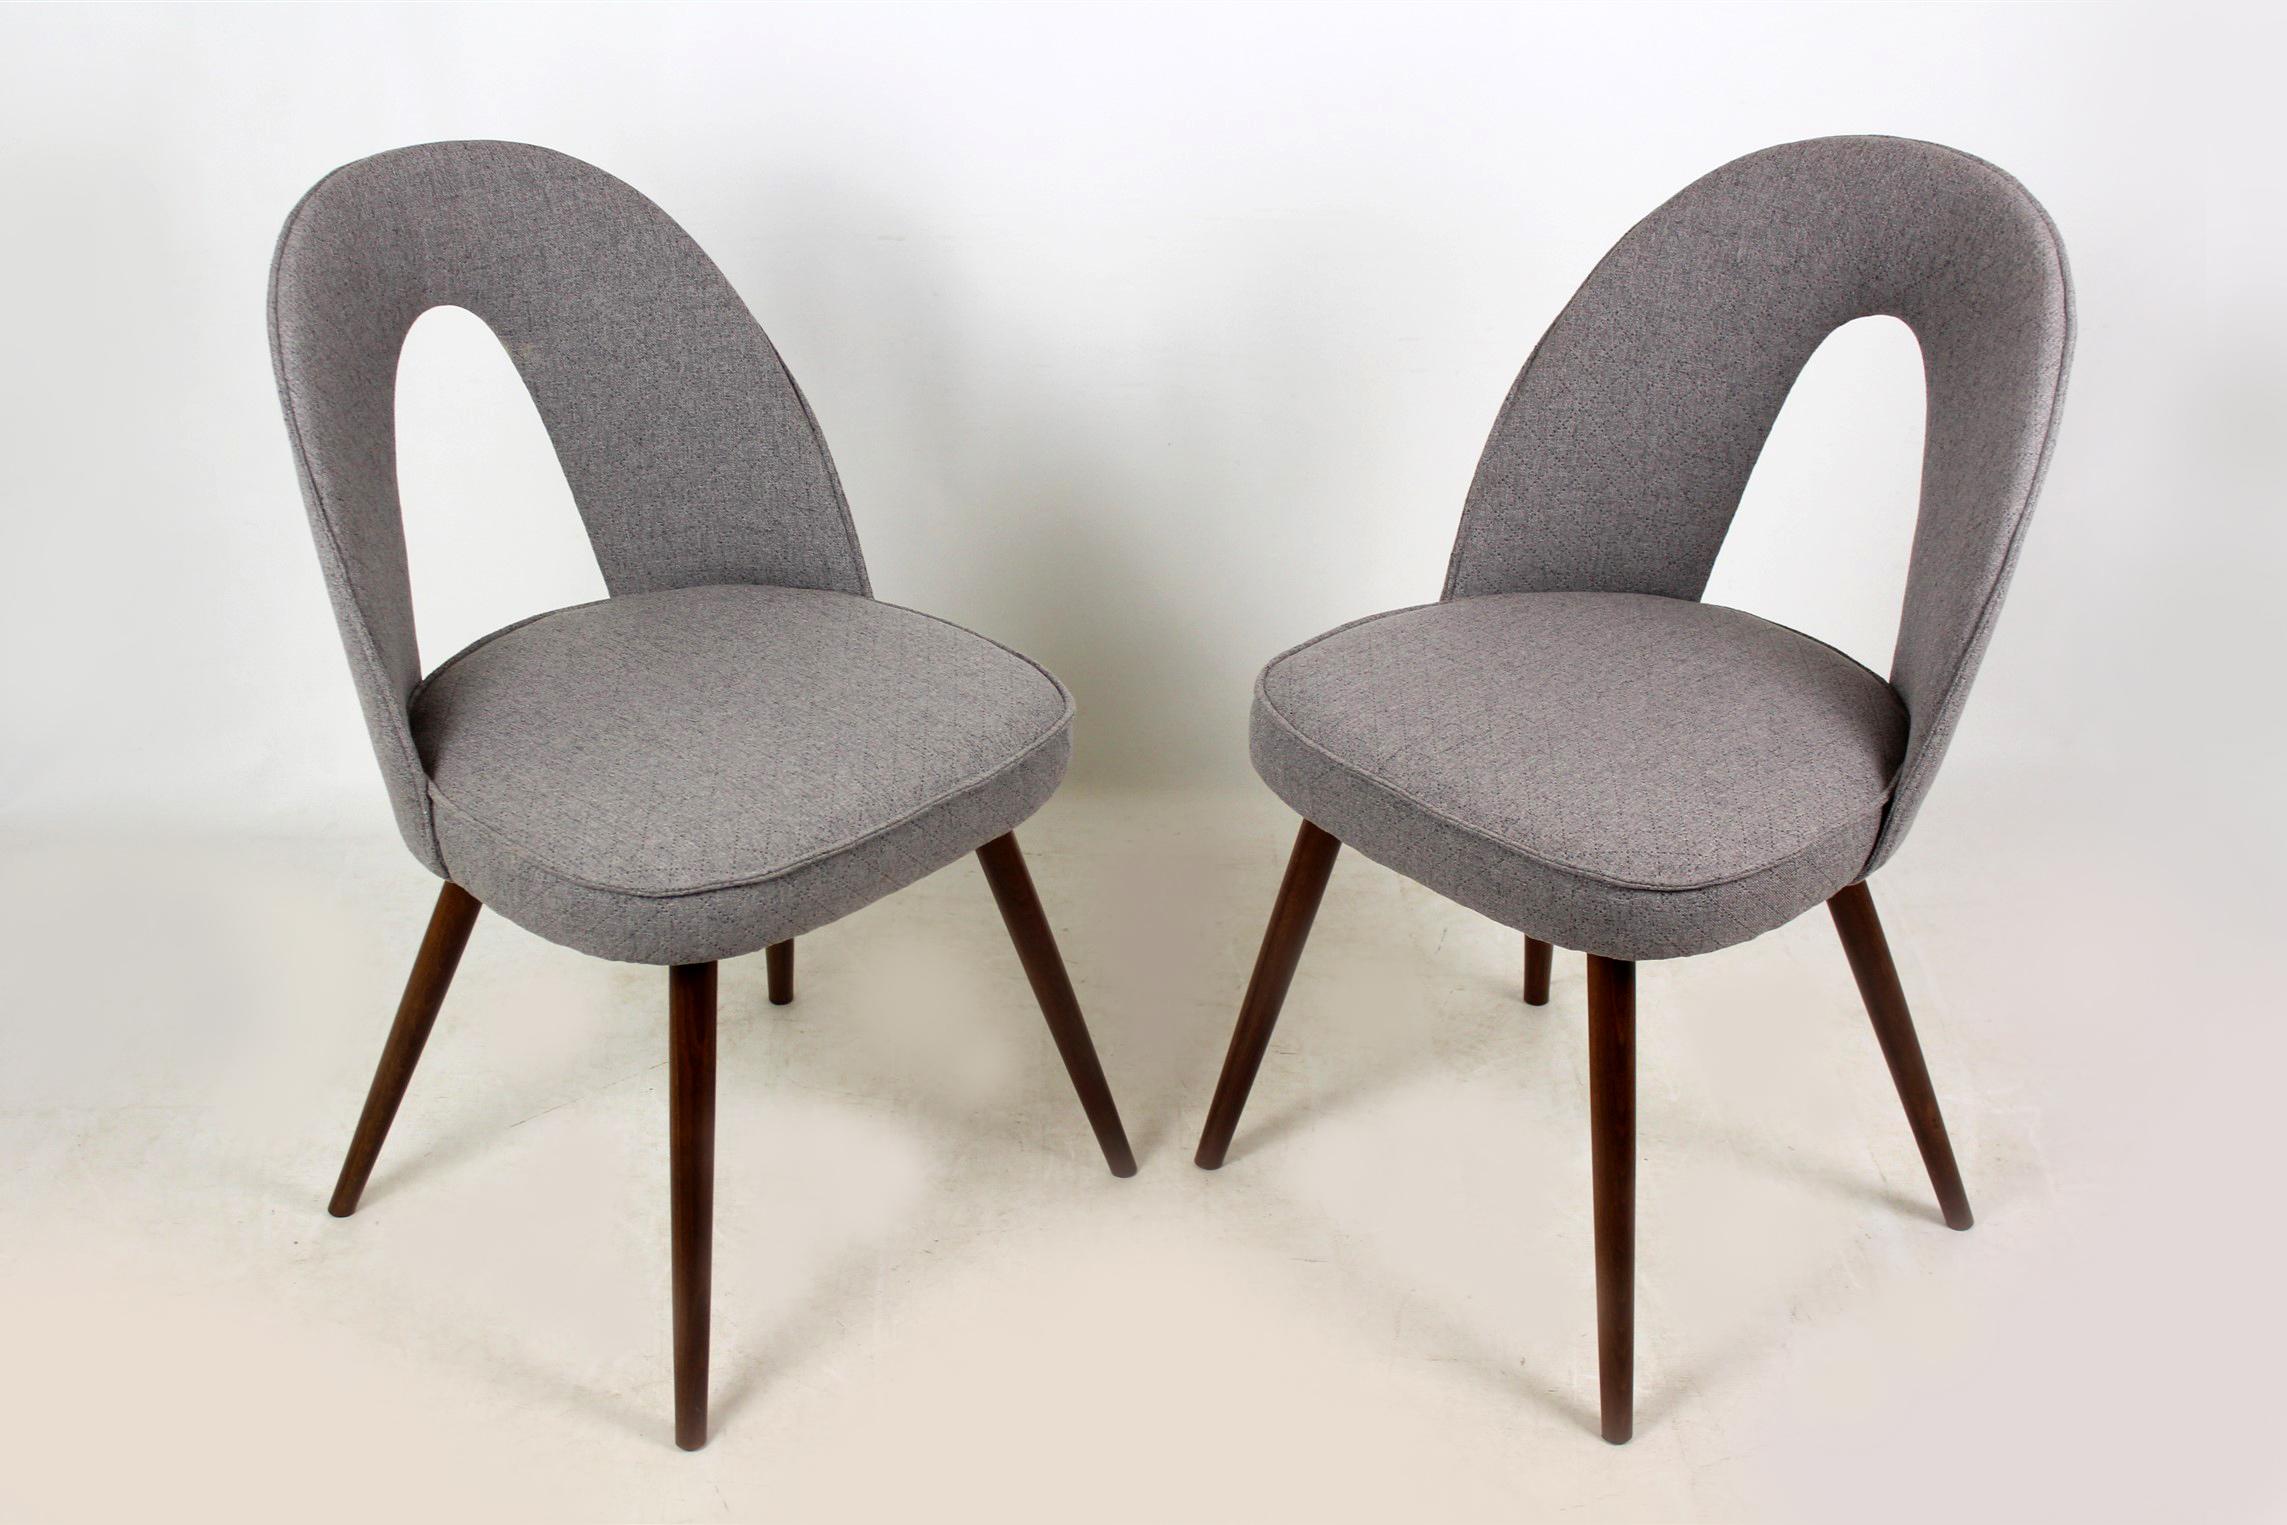 Satz von zwei Stühlen, hergestellt um 1960 in der ehemaligen Tschechoslowakei und entworfen von Antonin Suman für Tatra. Gepolstert mit neuen grauen Stoffbezügen.